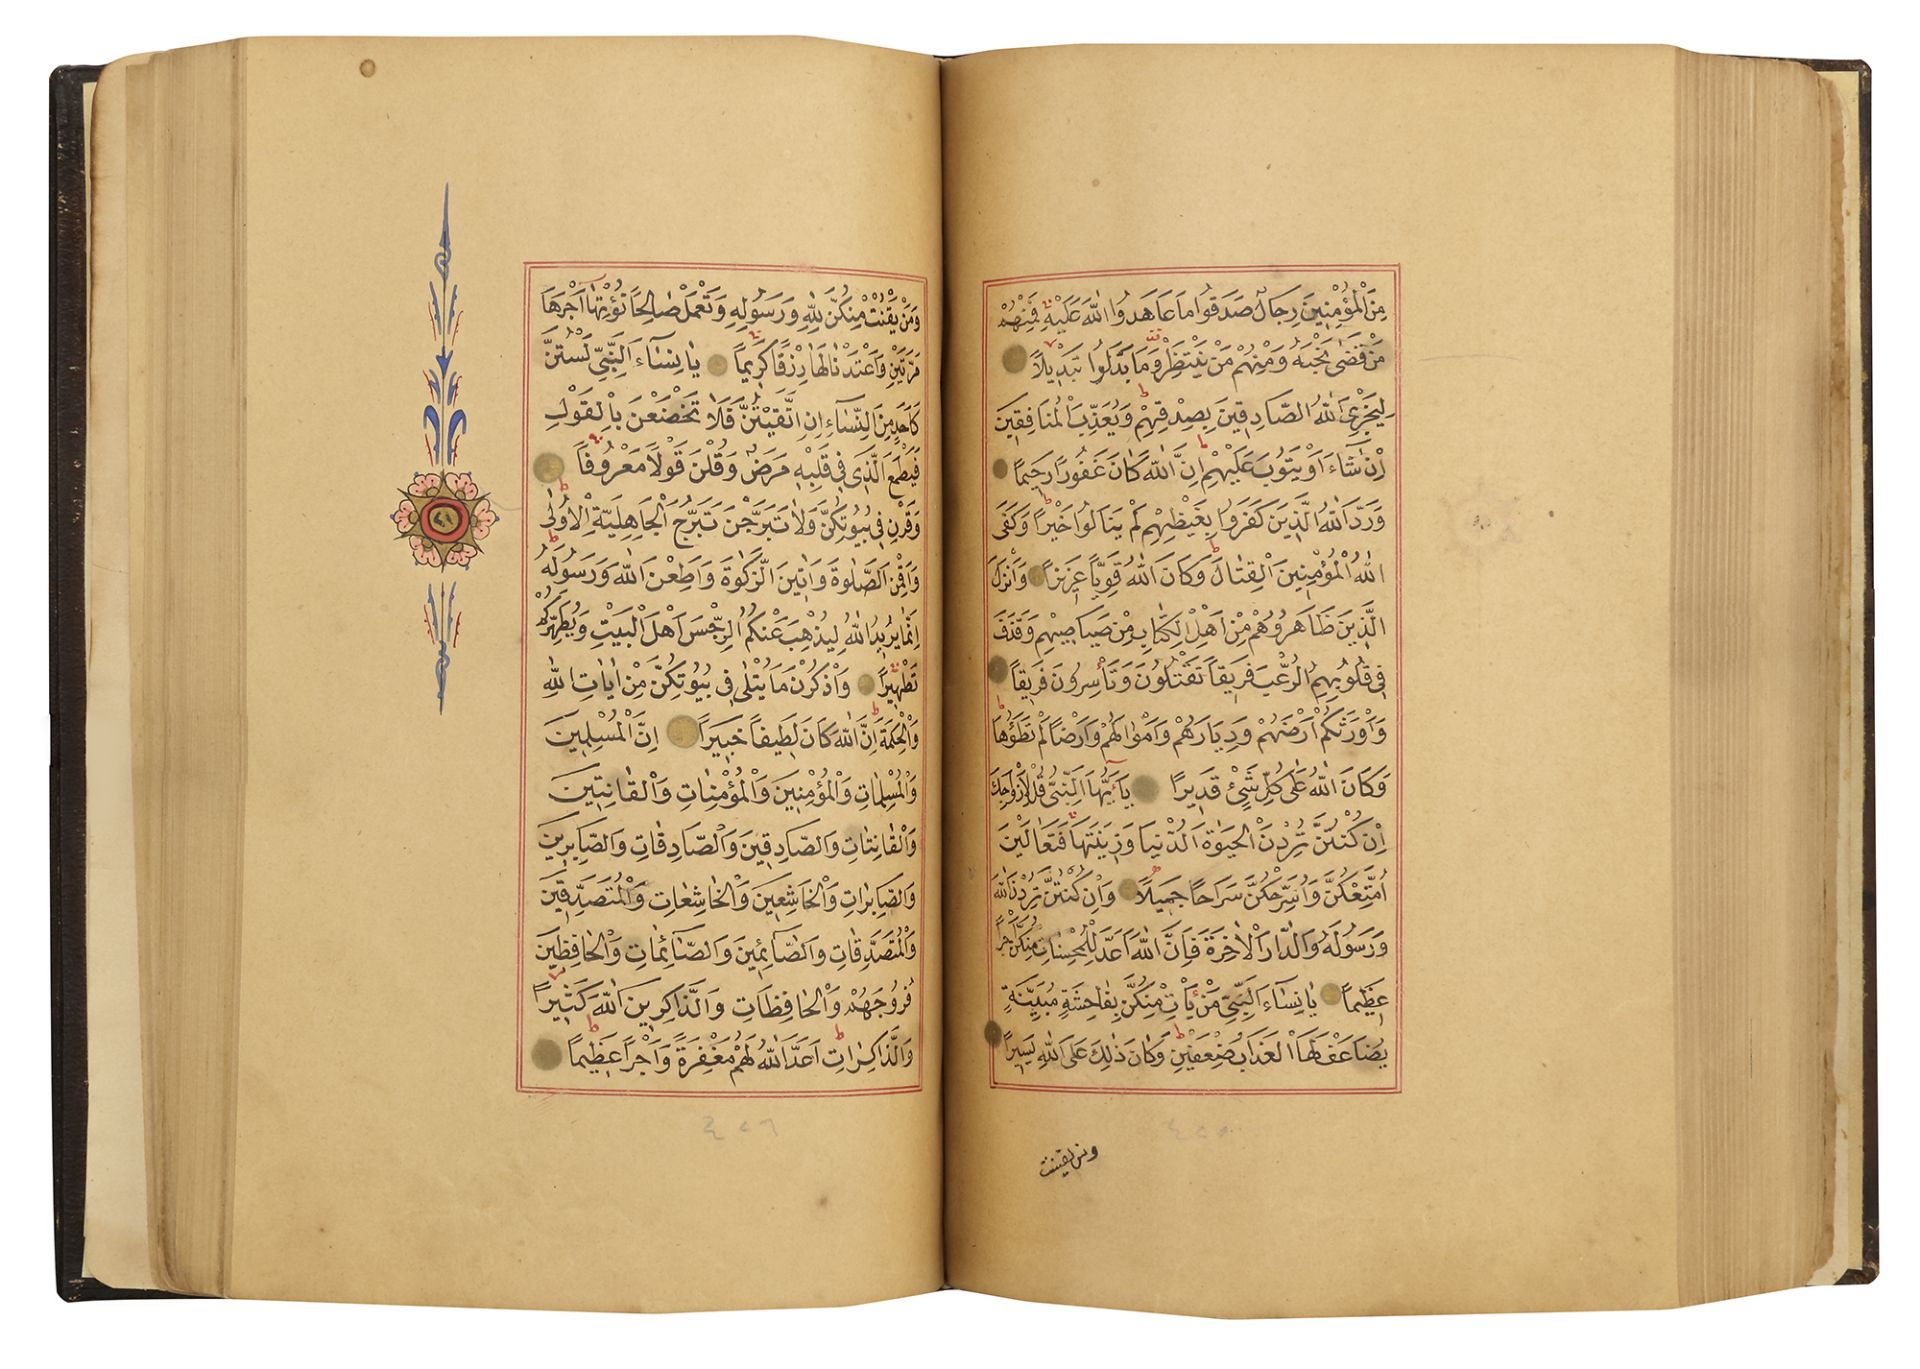 A FINE OTTOMAN QURAN, TURKEY, EDIRNE, WRITTEN BY HUSSEIN AL-HUSNA IBN AHMED AL-ADRUNI, DATED 1287 AH - Bild 6 aus 8